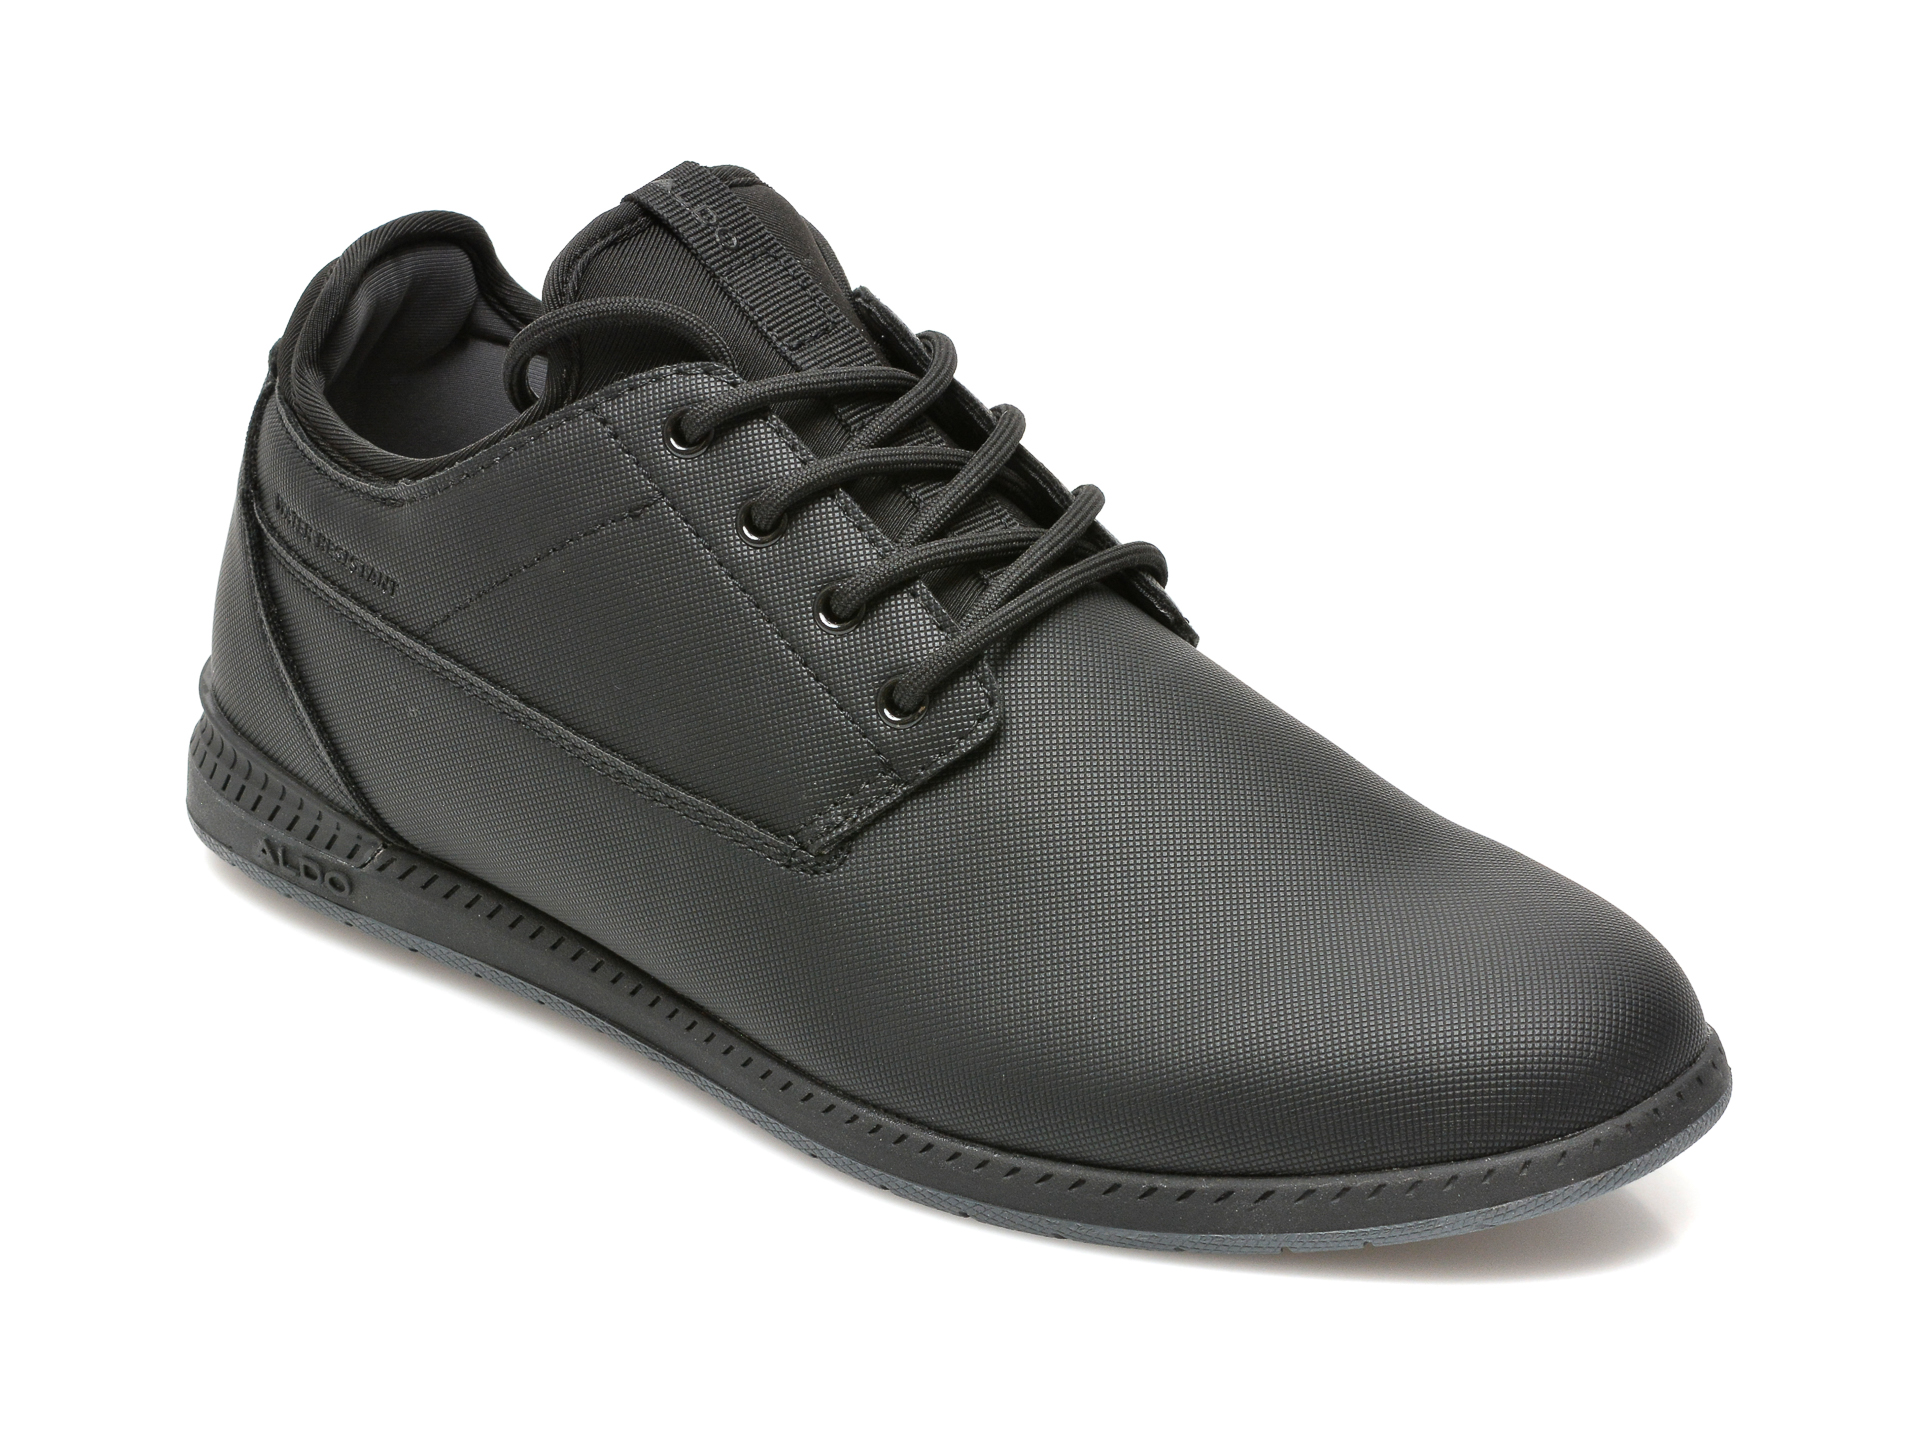 Pantofi ALDO negri, BLUFFERS-WR007, din piele ecologica Aldo imagine reduceri